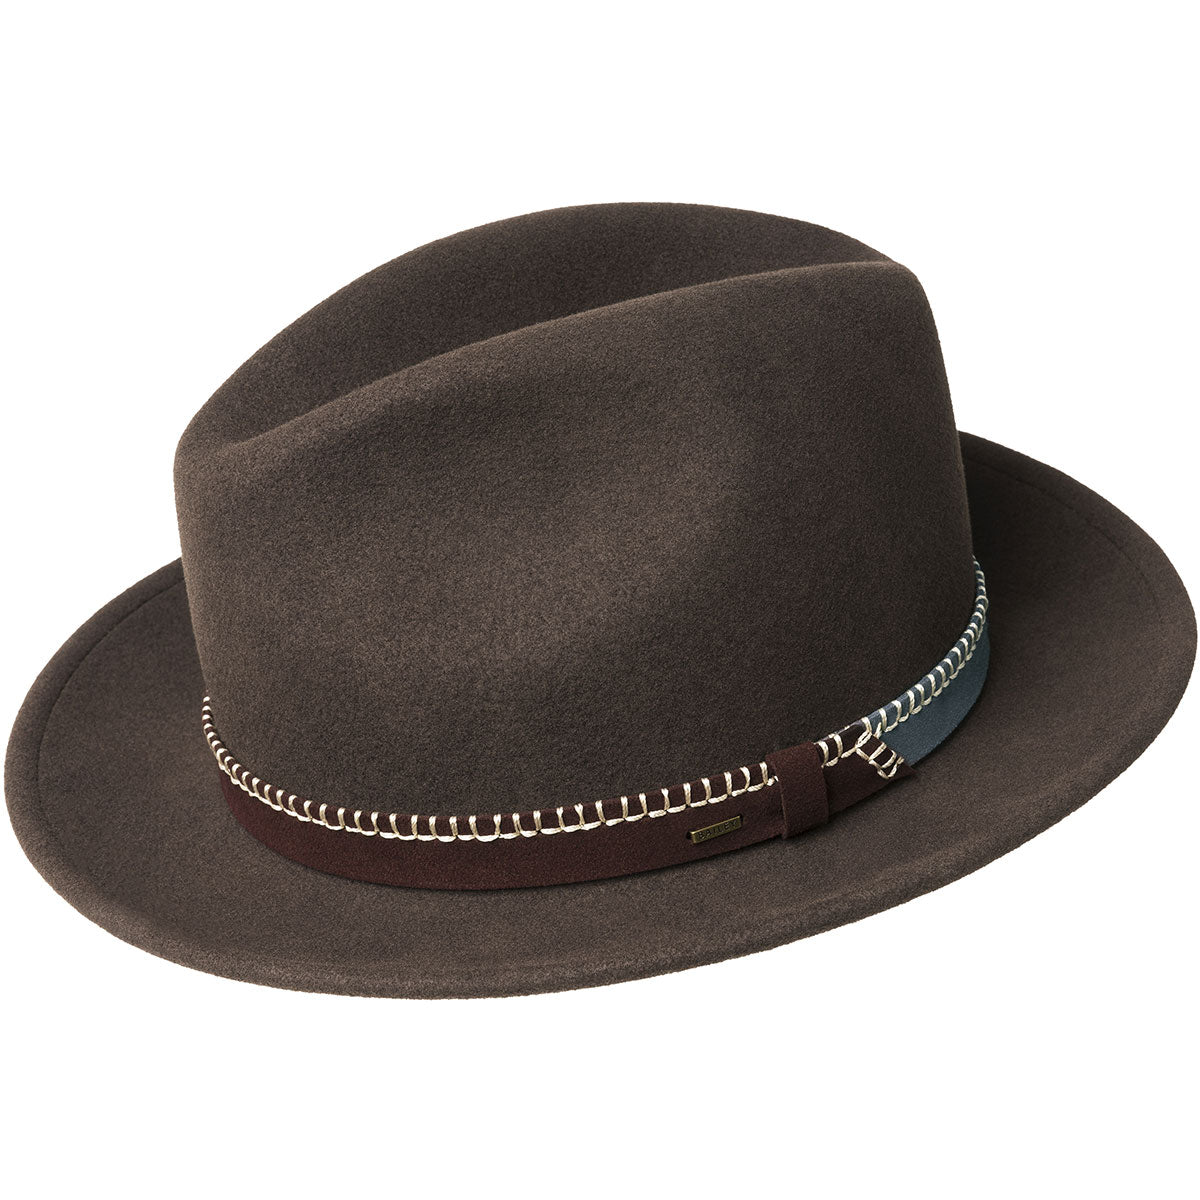 Sophisticate's Signature Fedora Hat